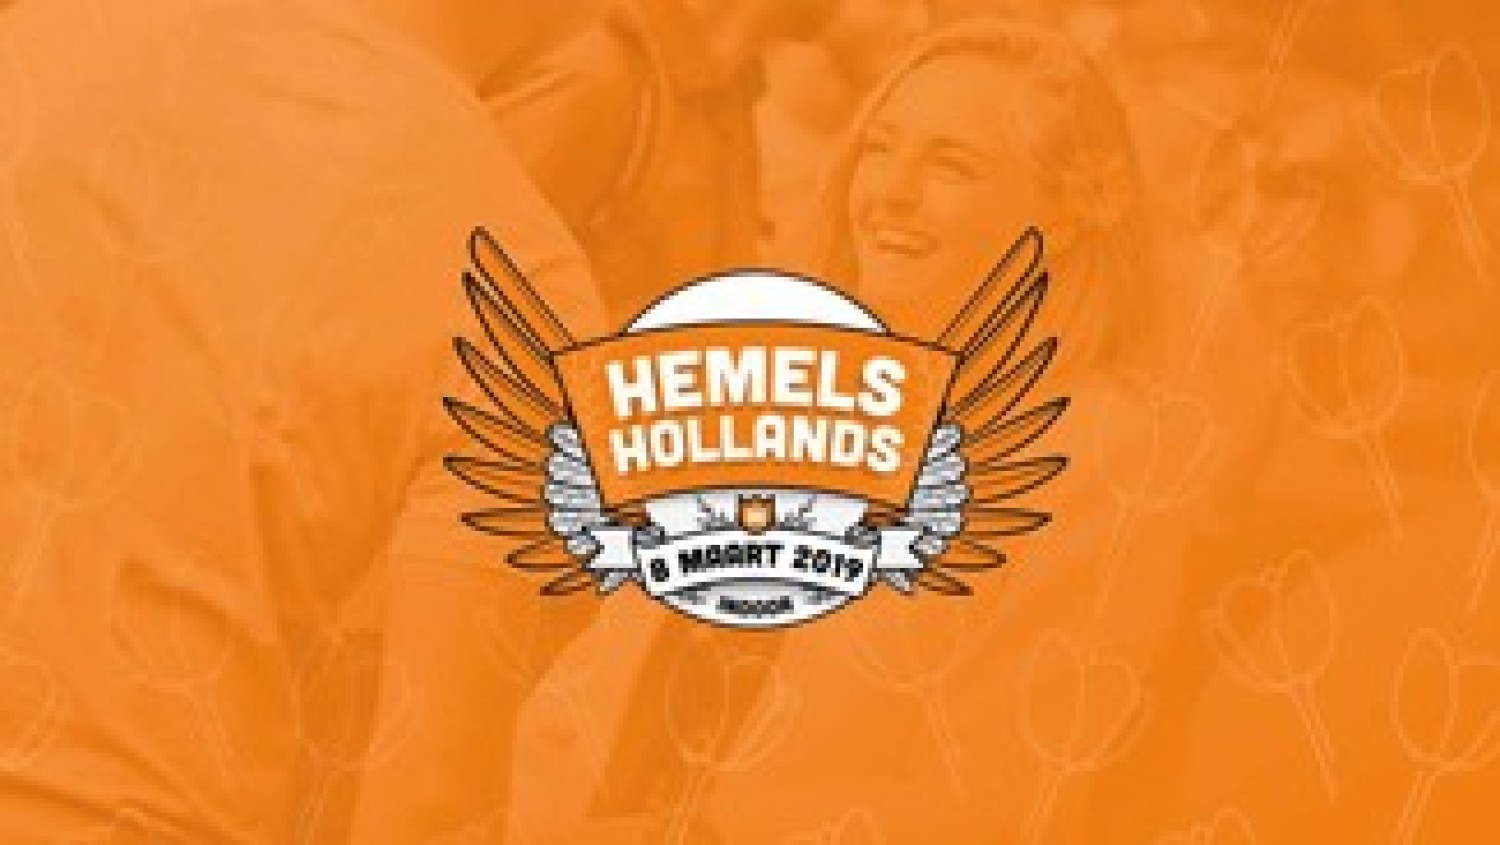 Party nieuws: Eerste Indoor editie Hemels Hollands op vrijdag 8 maart!